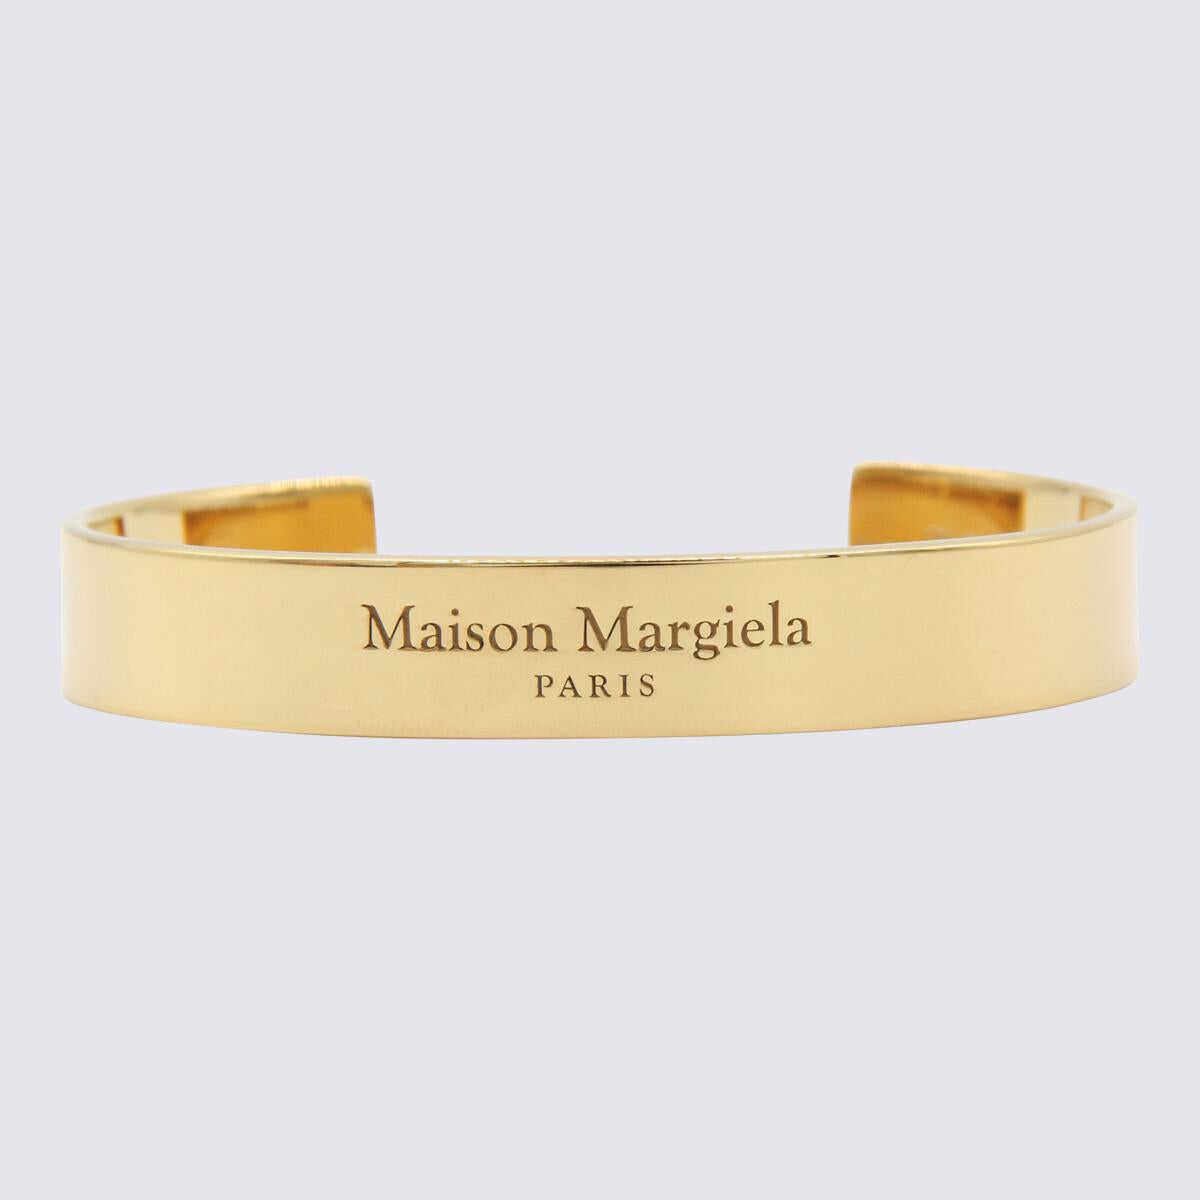 Maison Margiela MAISON MARGIELA GOLD TONE LOGO RIGID BRACELET Yellow Gold Plating Burattato